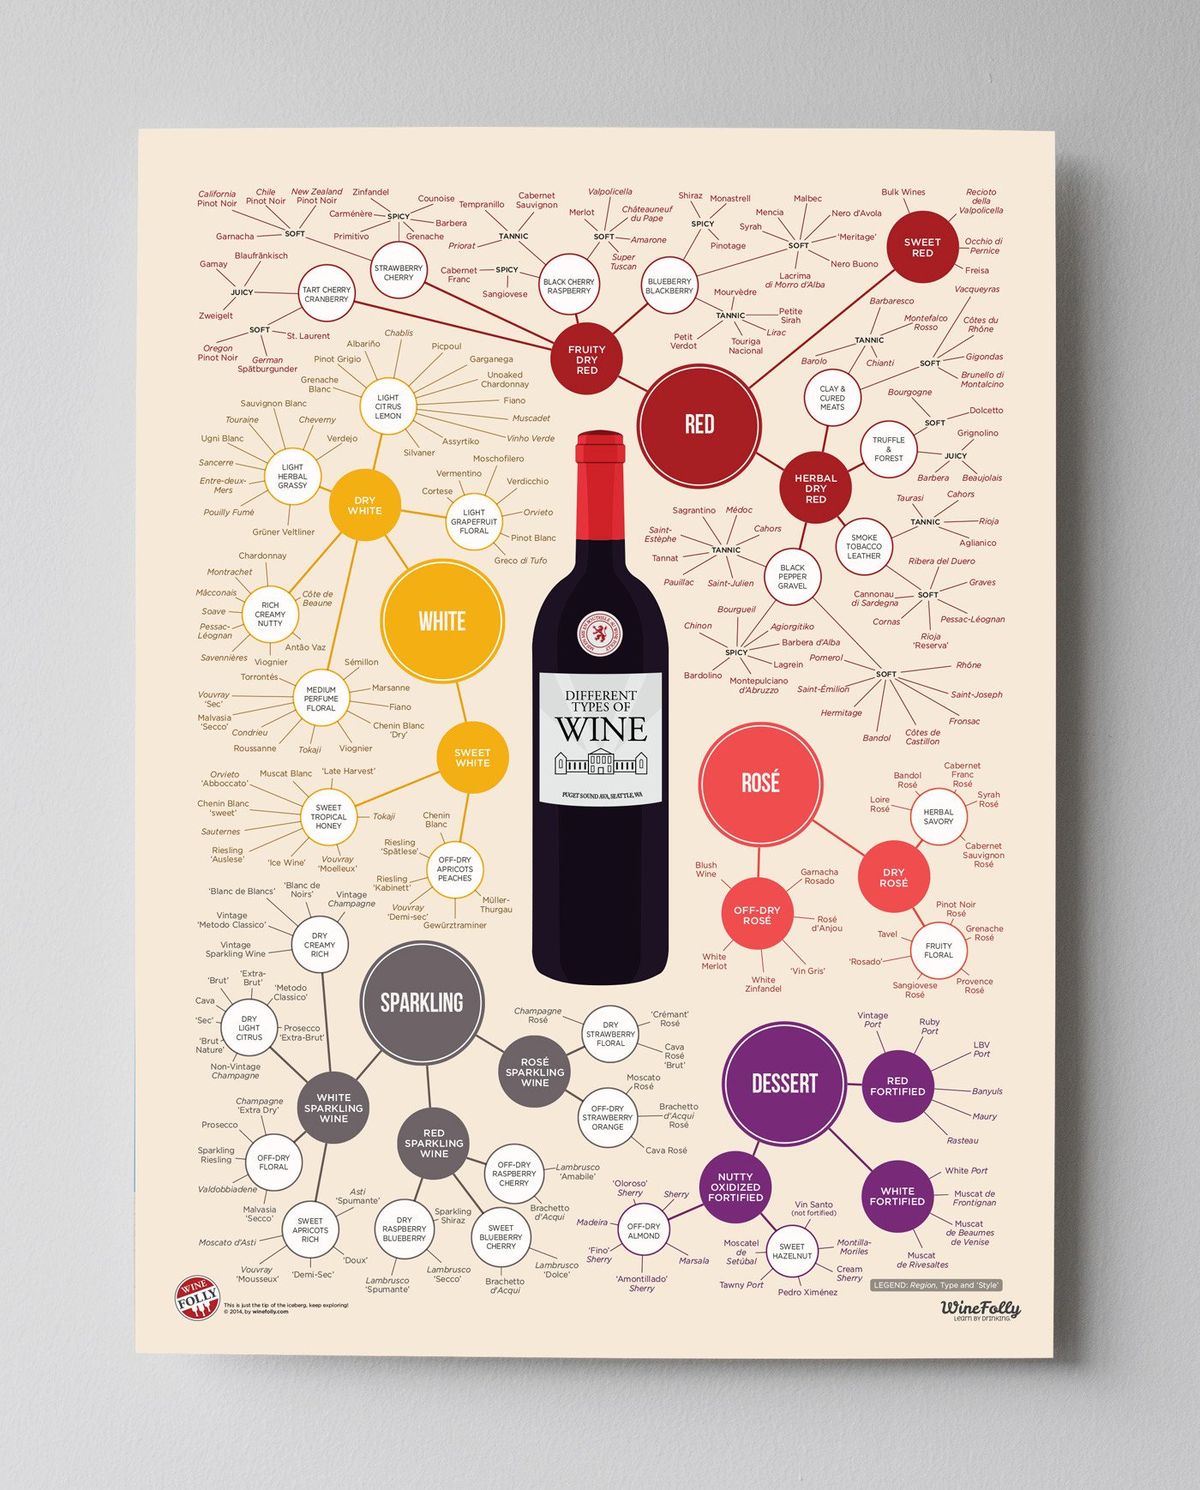 أنواع مختلفة من ملصقات النبيذ من Wine Folly